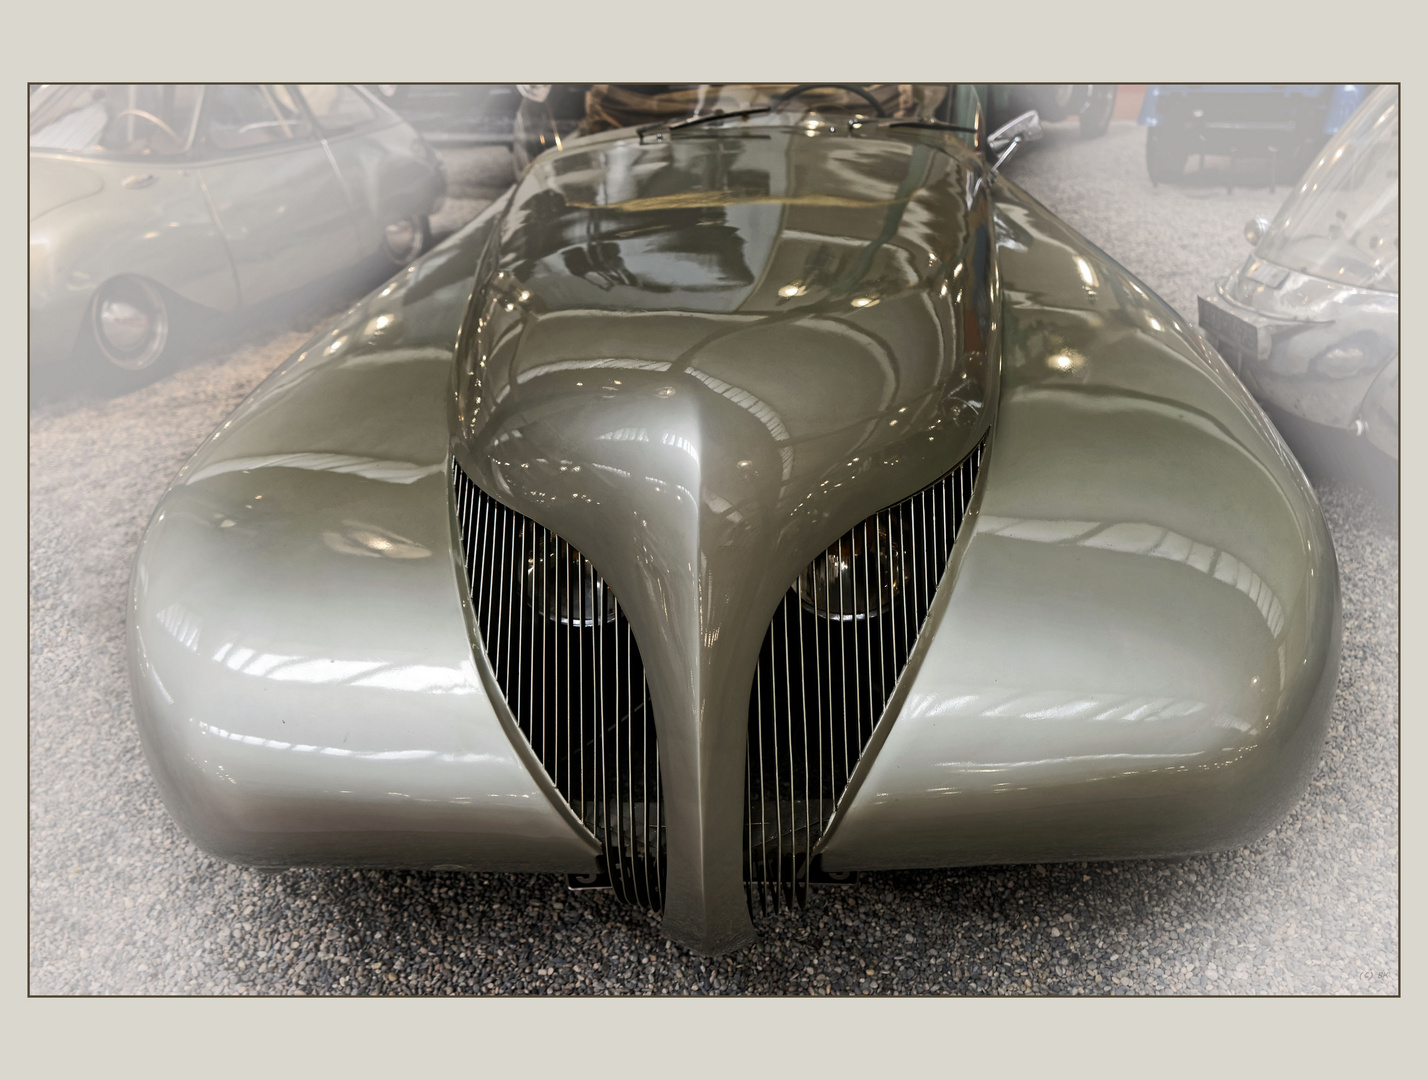 Arzens Cabriolet "La Baleine" 1938